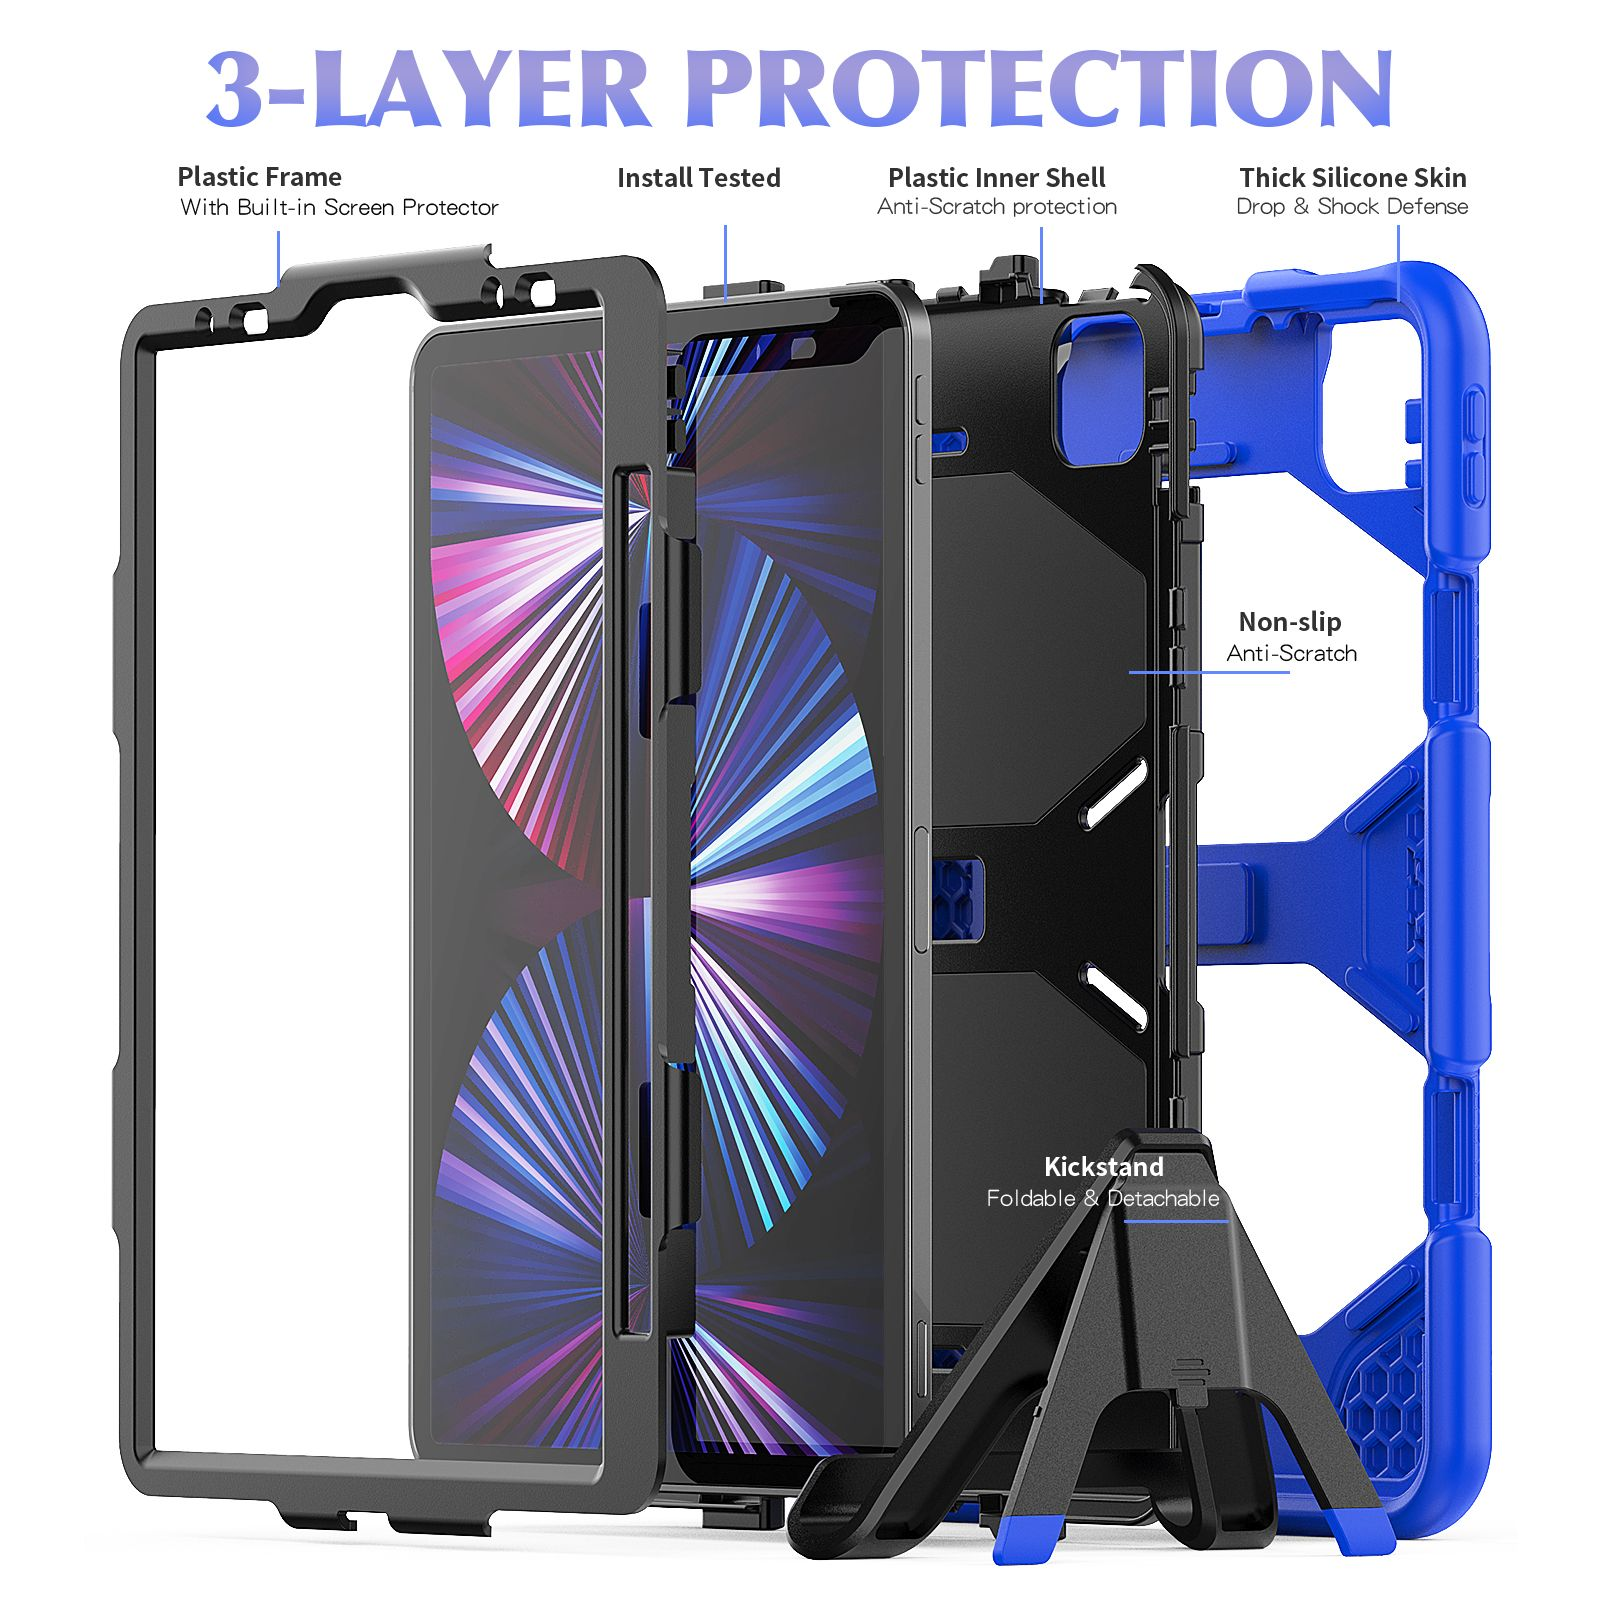 2020/2021/2022 für Air Apple Outdoor 3in1 Kunststoff, Pro 4 LOBWERK 11 Bookcover iPad Schutzhülle Case Blau